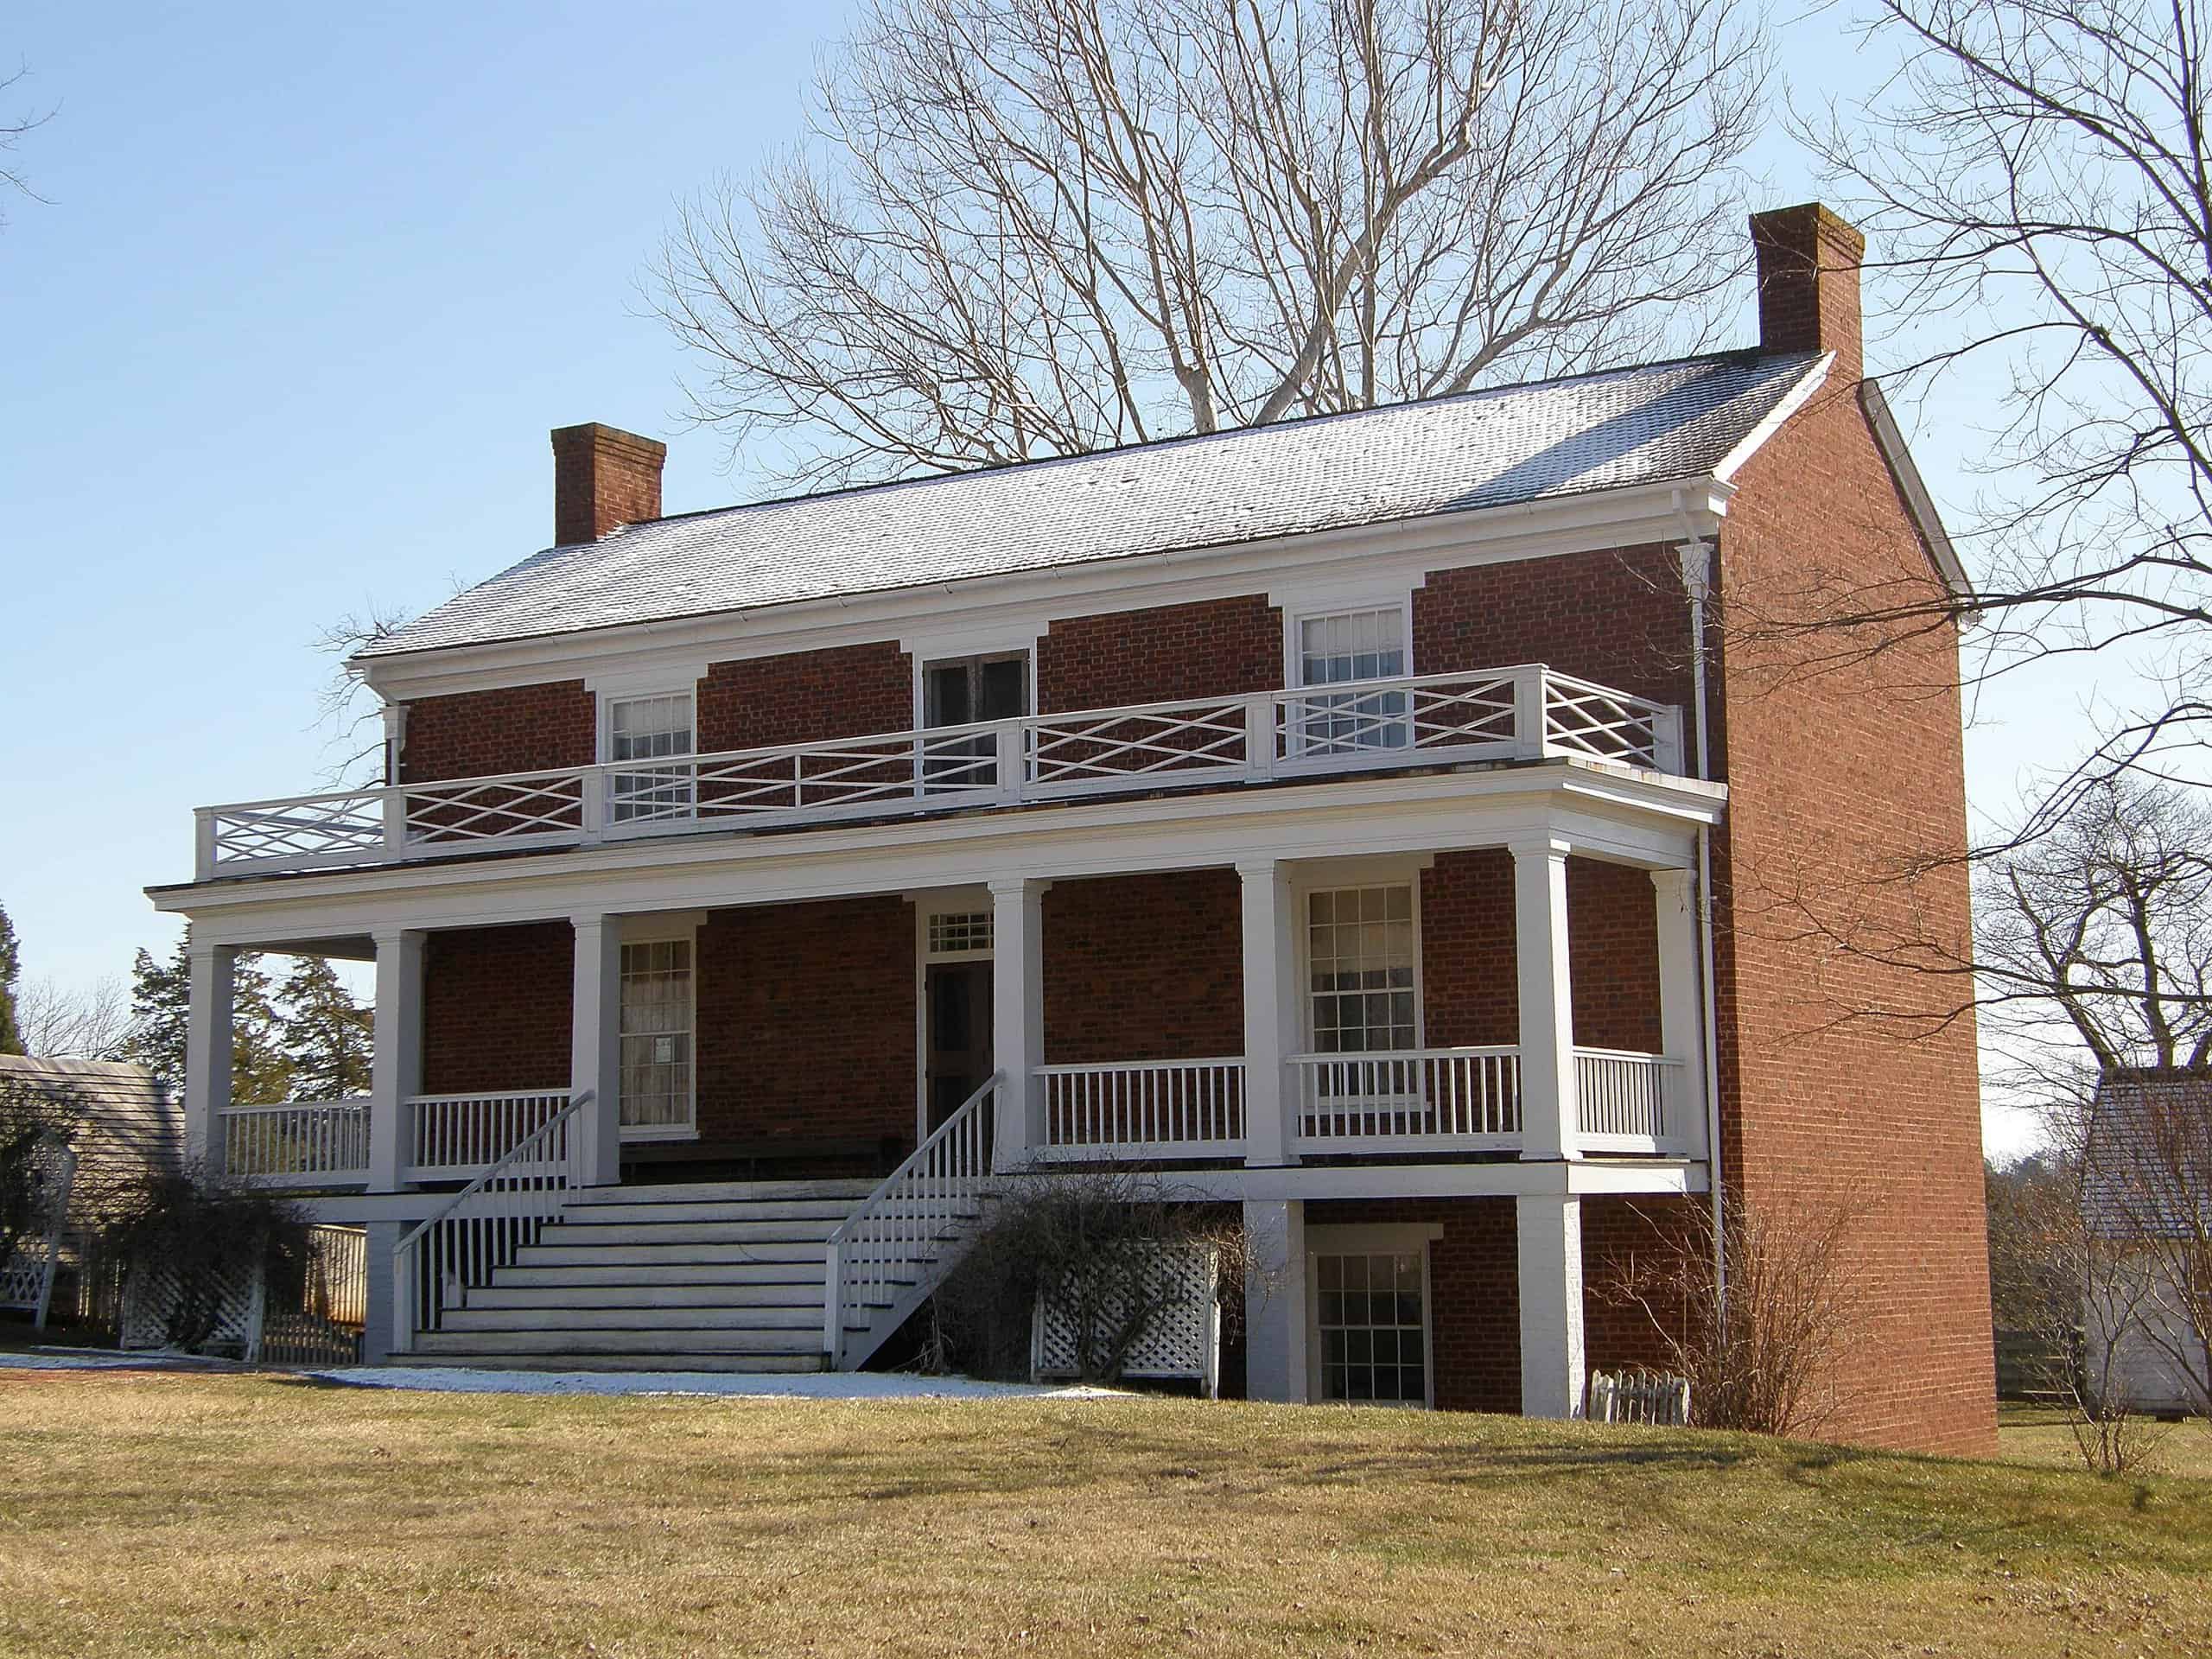 Mclean House, Appomattox CH by Jim Bowen